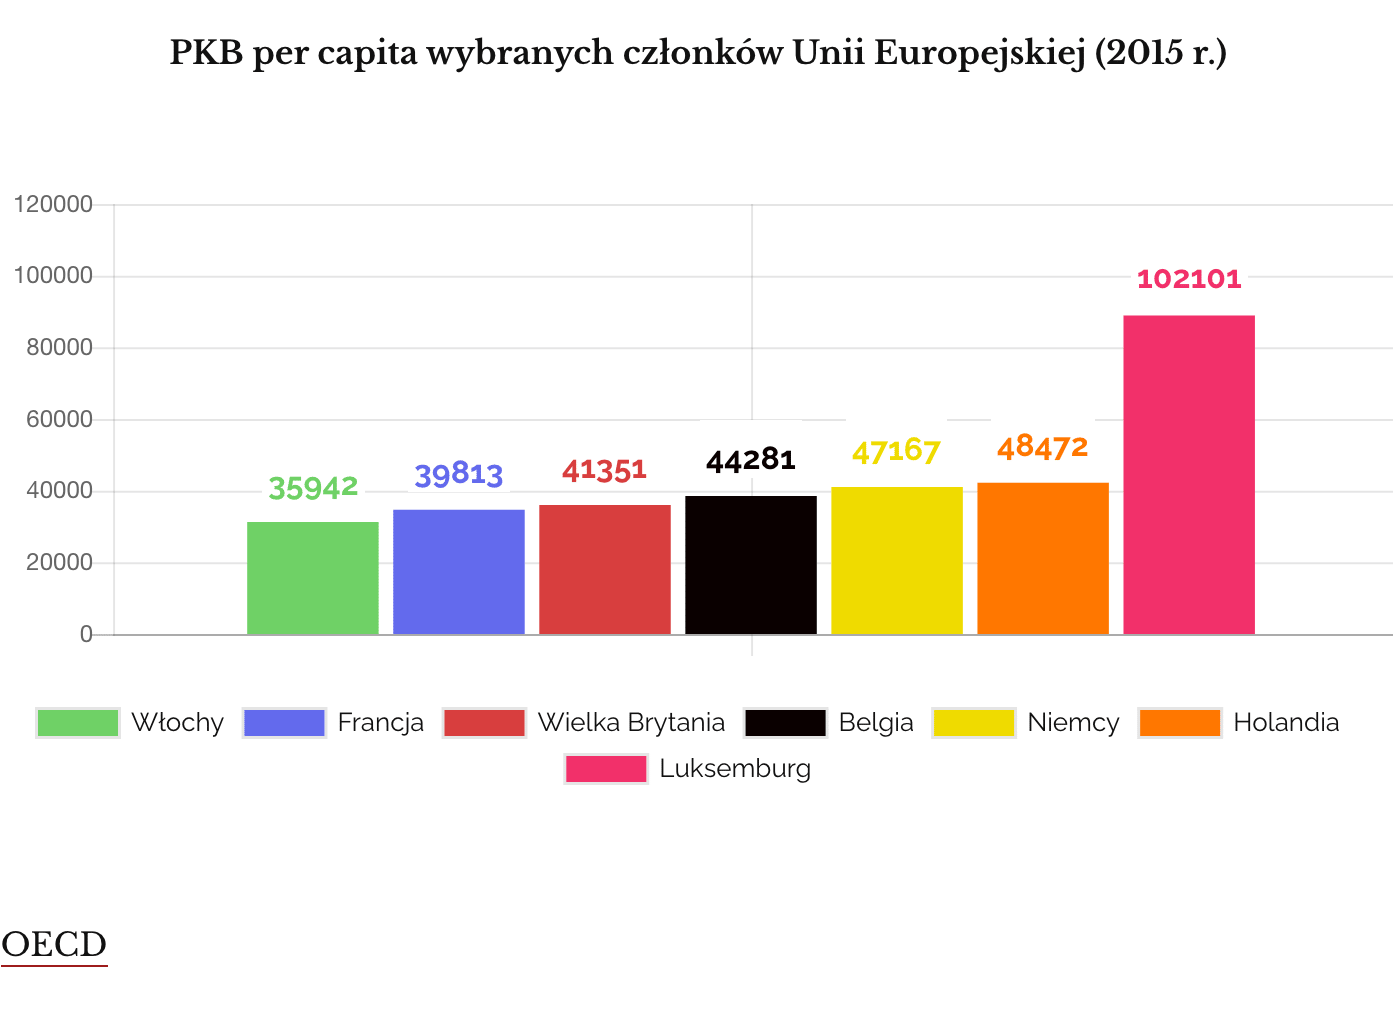 PKB per capita w UE (2015)